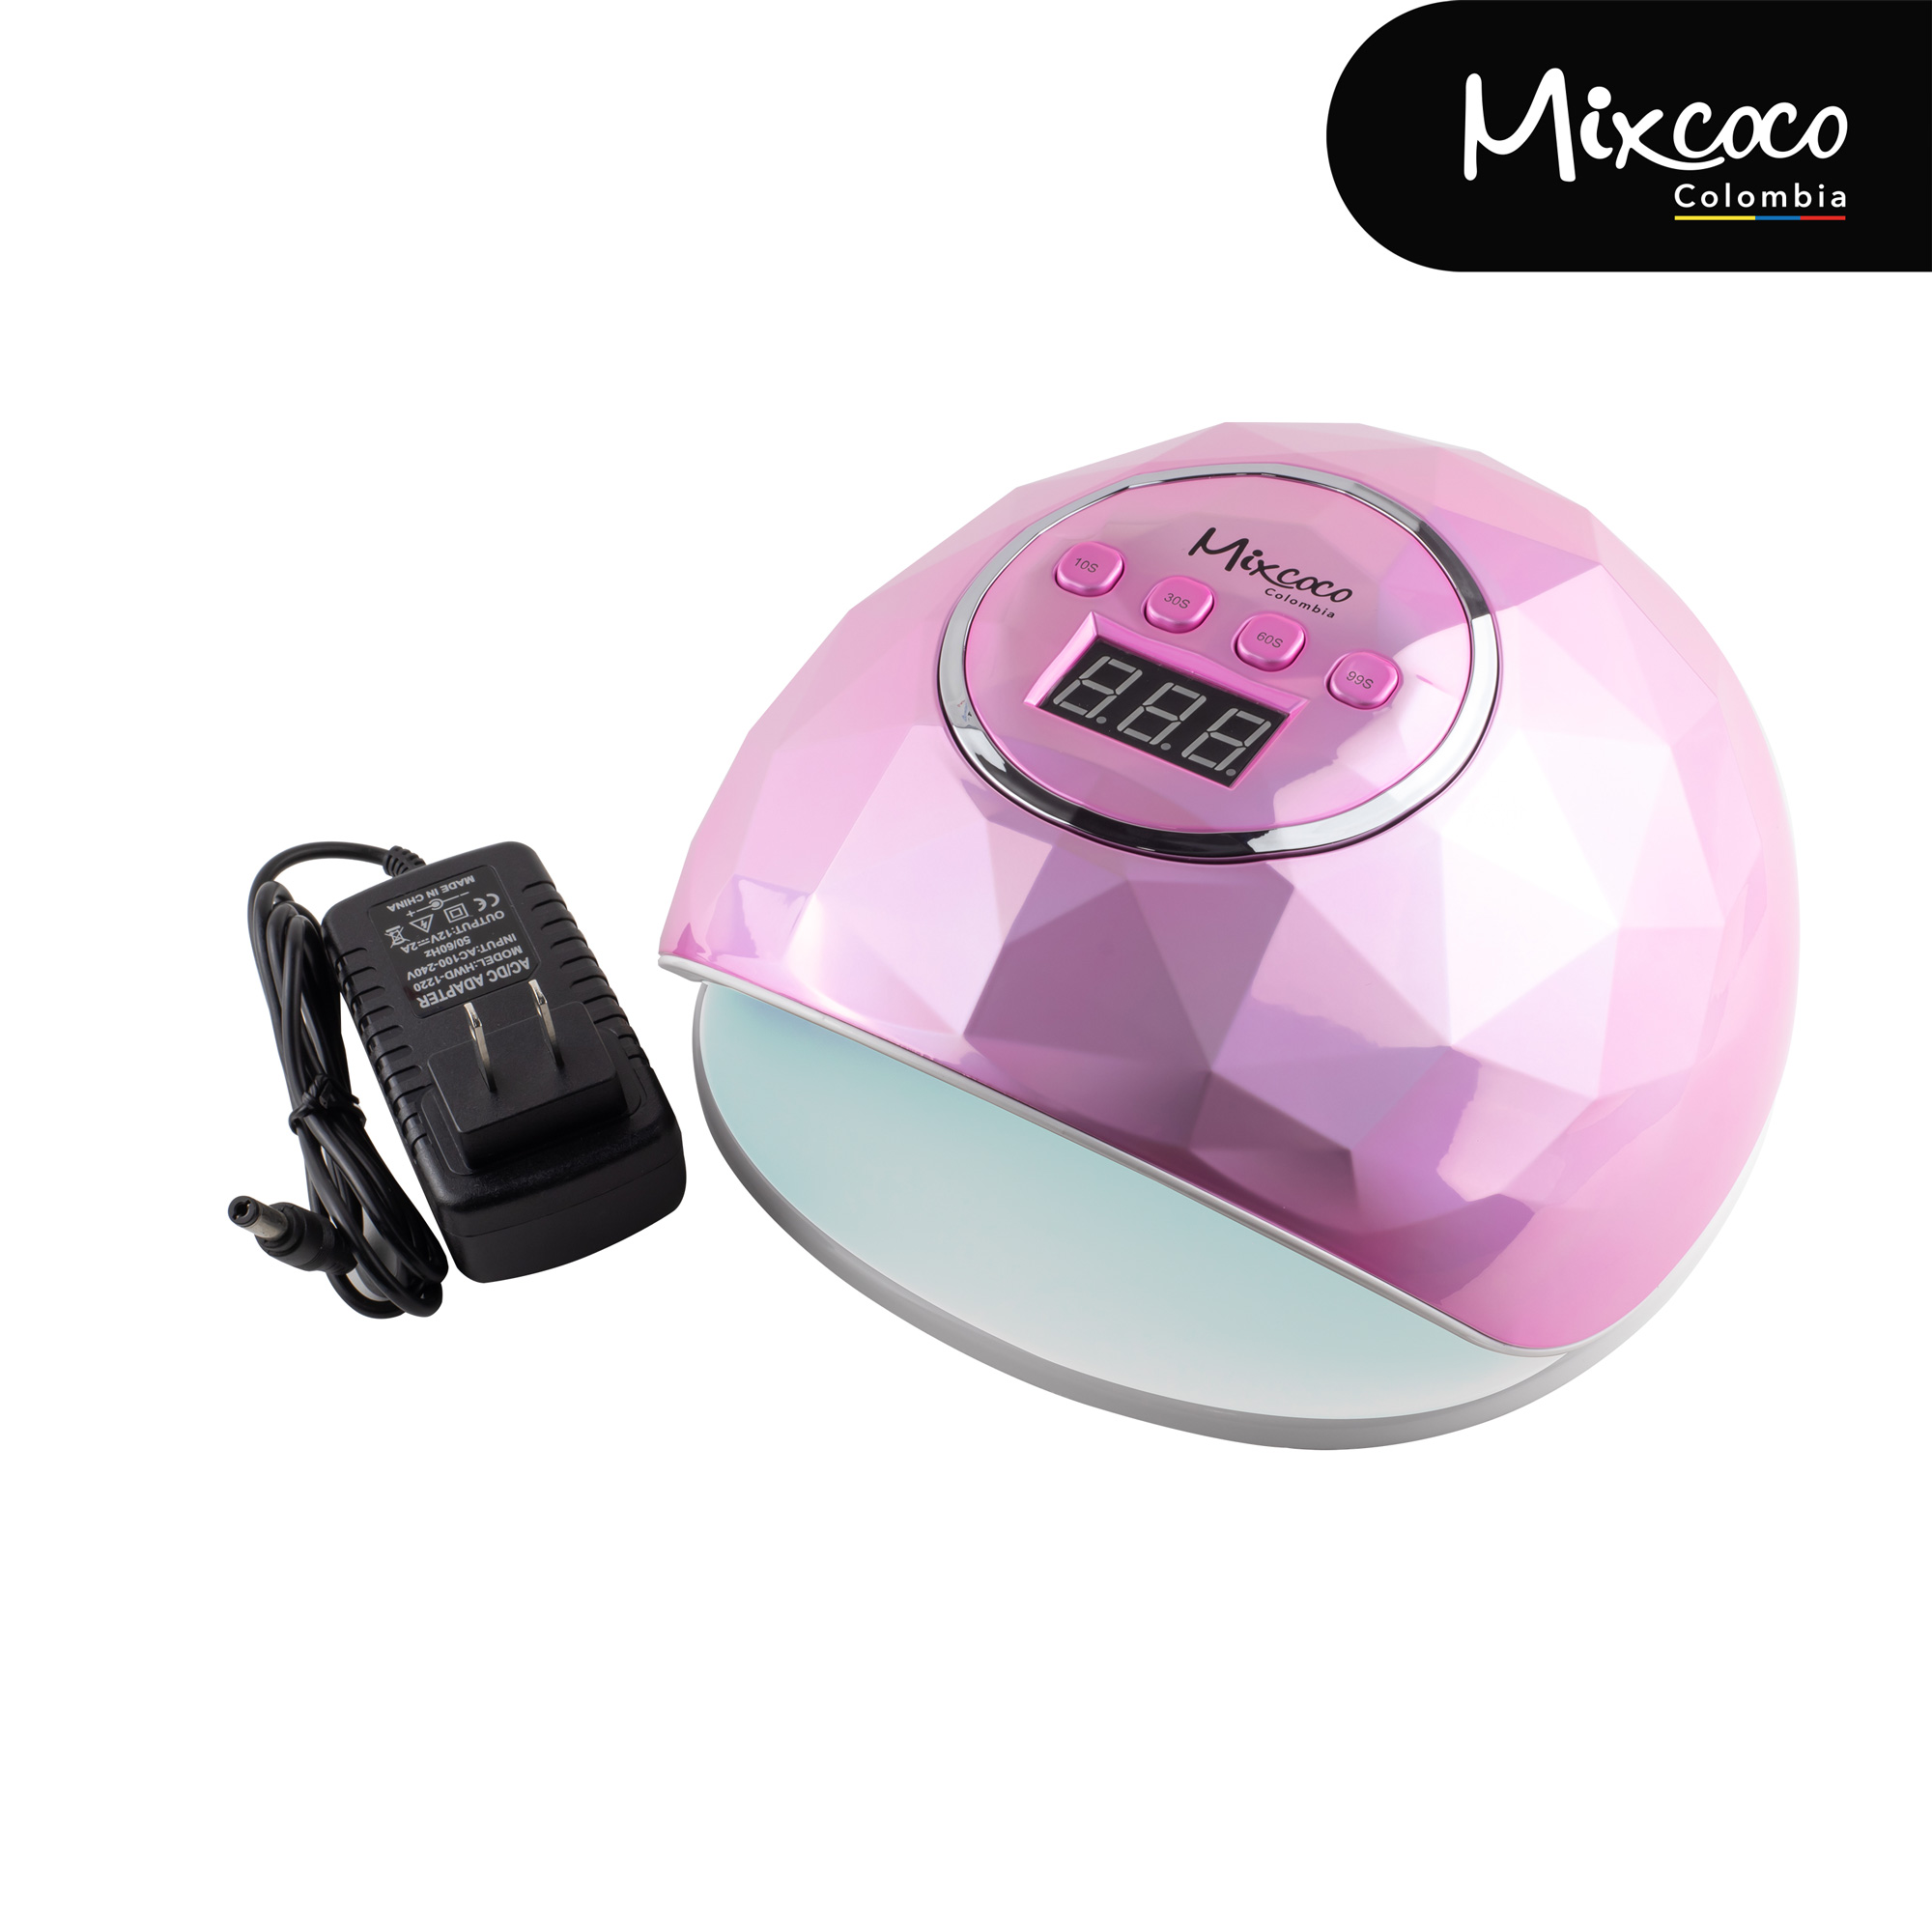 Lámpara UV/LED Mixcoco 86w rosada